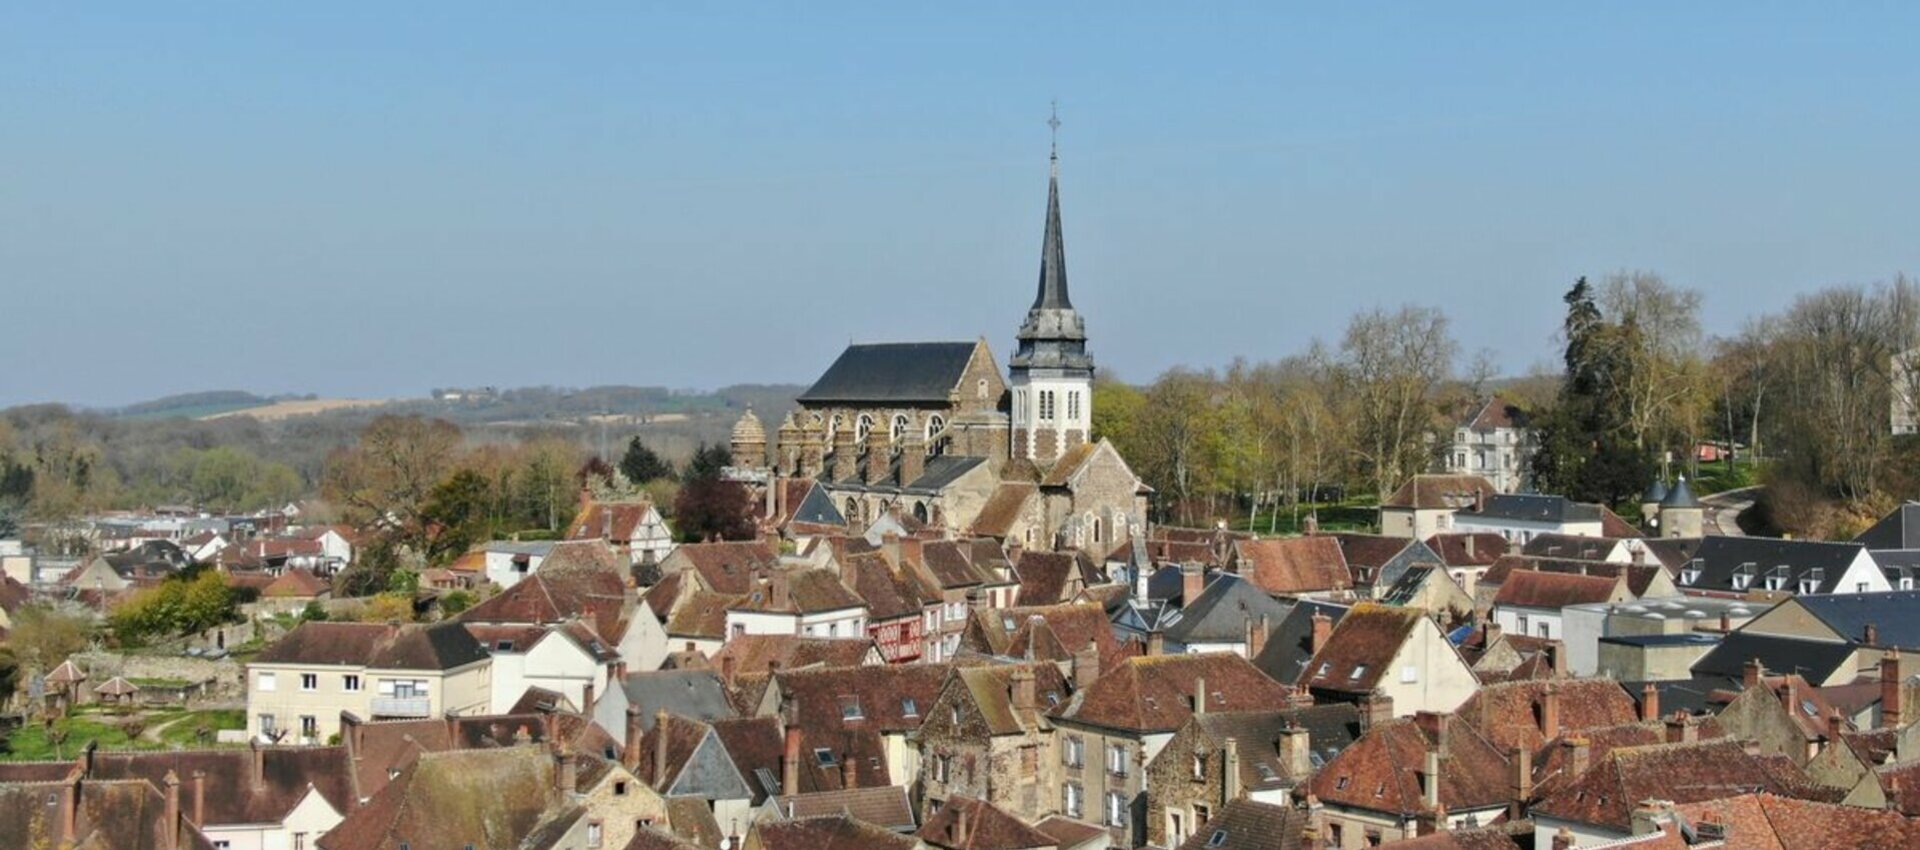 Le périscolaire de la commune de Toucy (89) Yonne